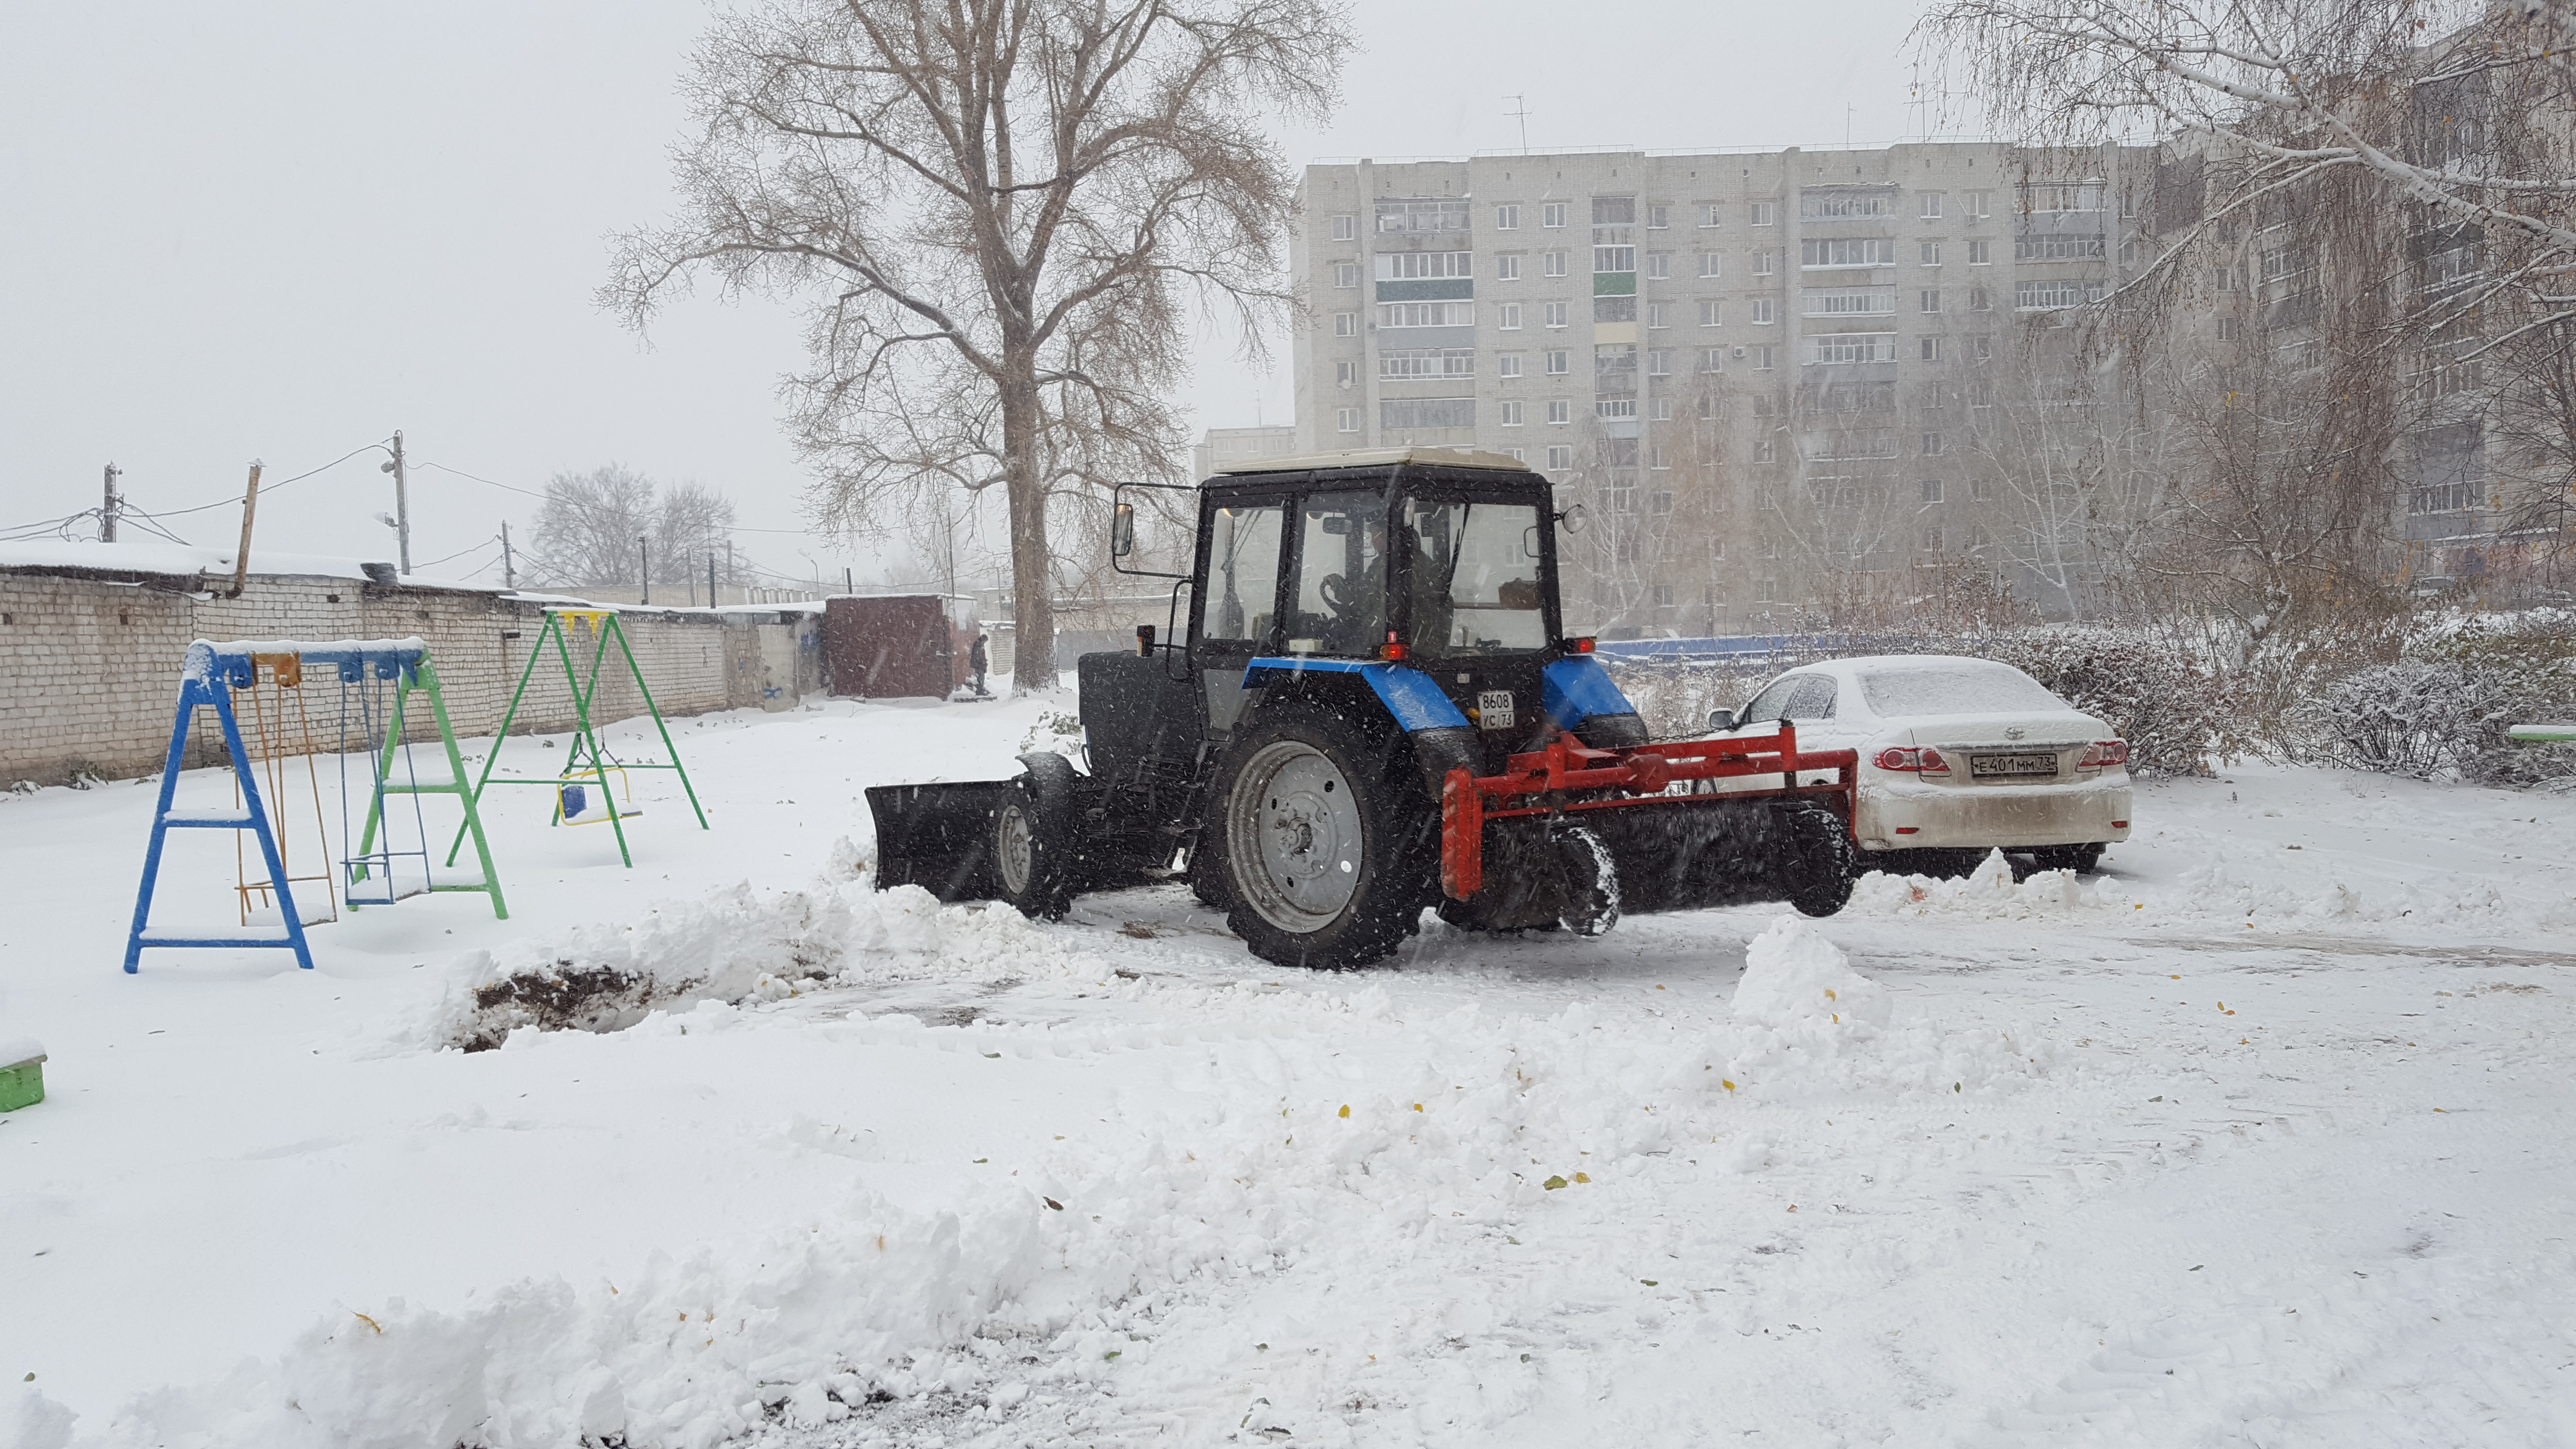 Администрация Ульяновска проконтролирует работу снегоуборочной техники во дворах через ГЛОНАСС.